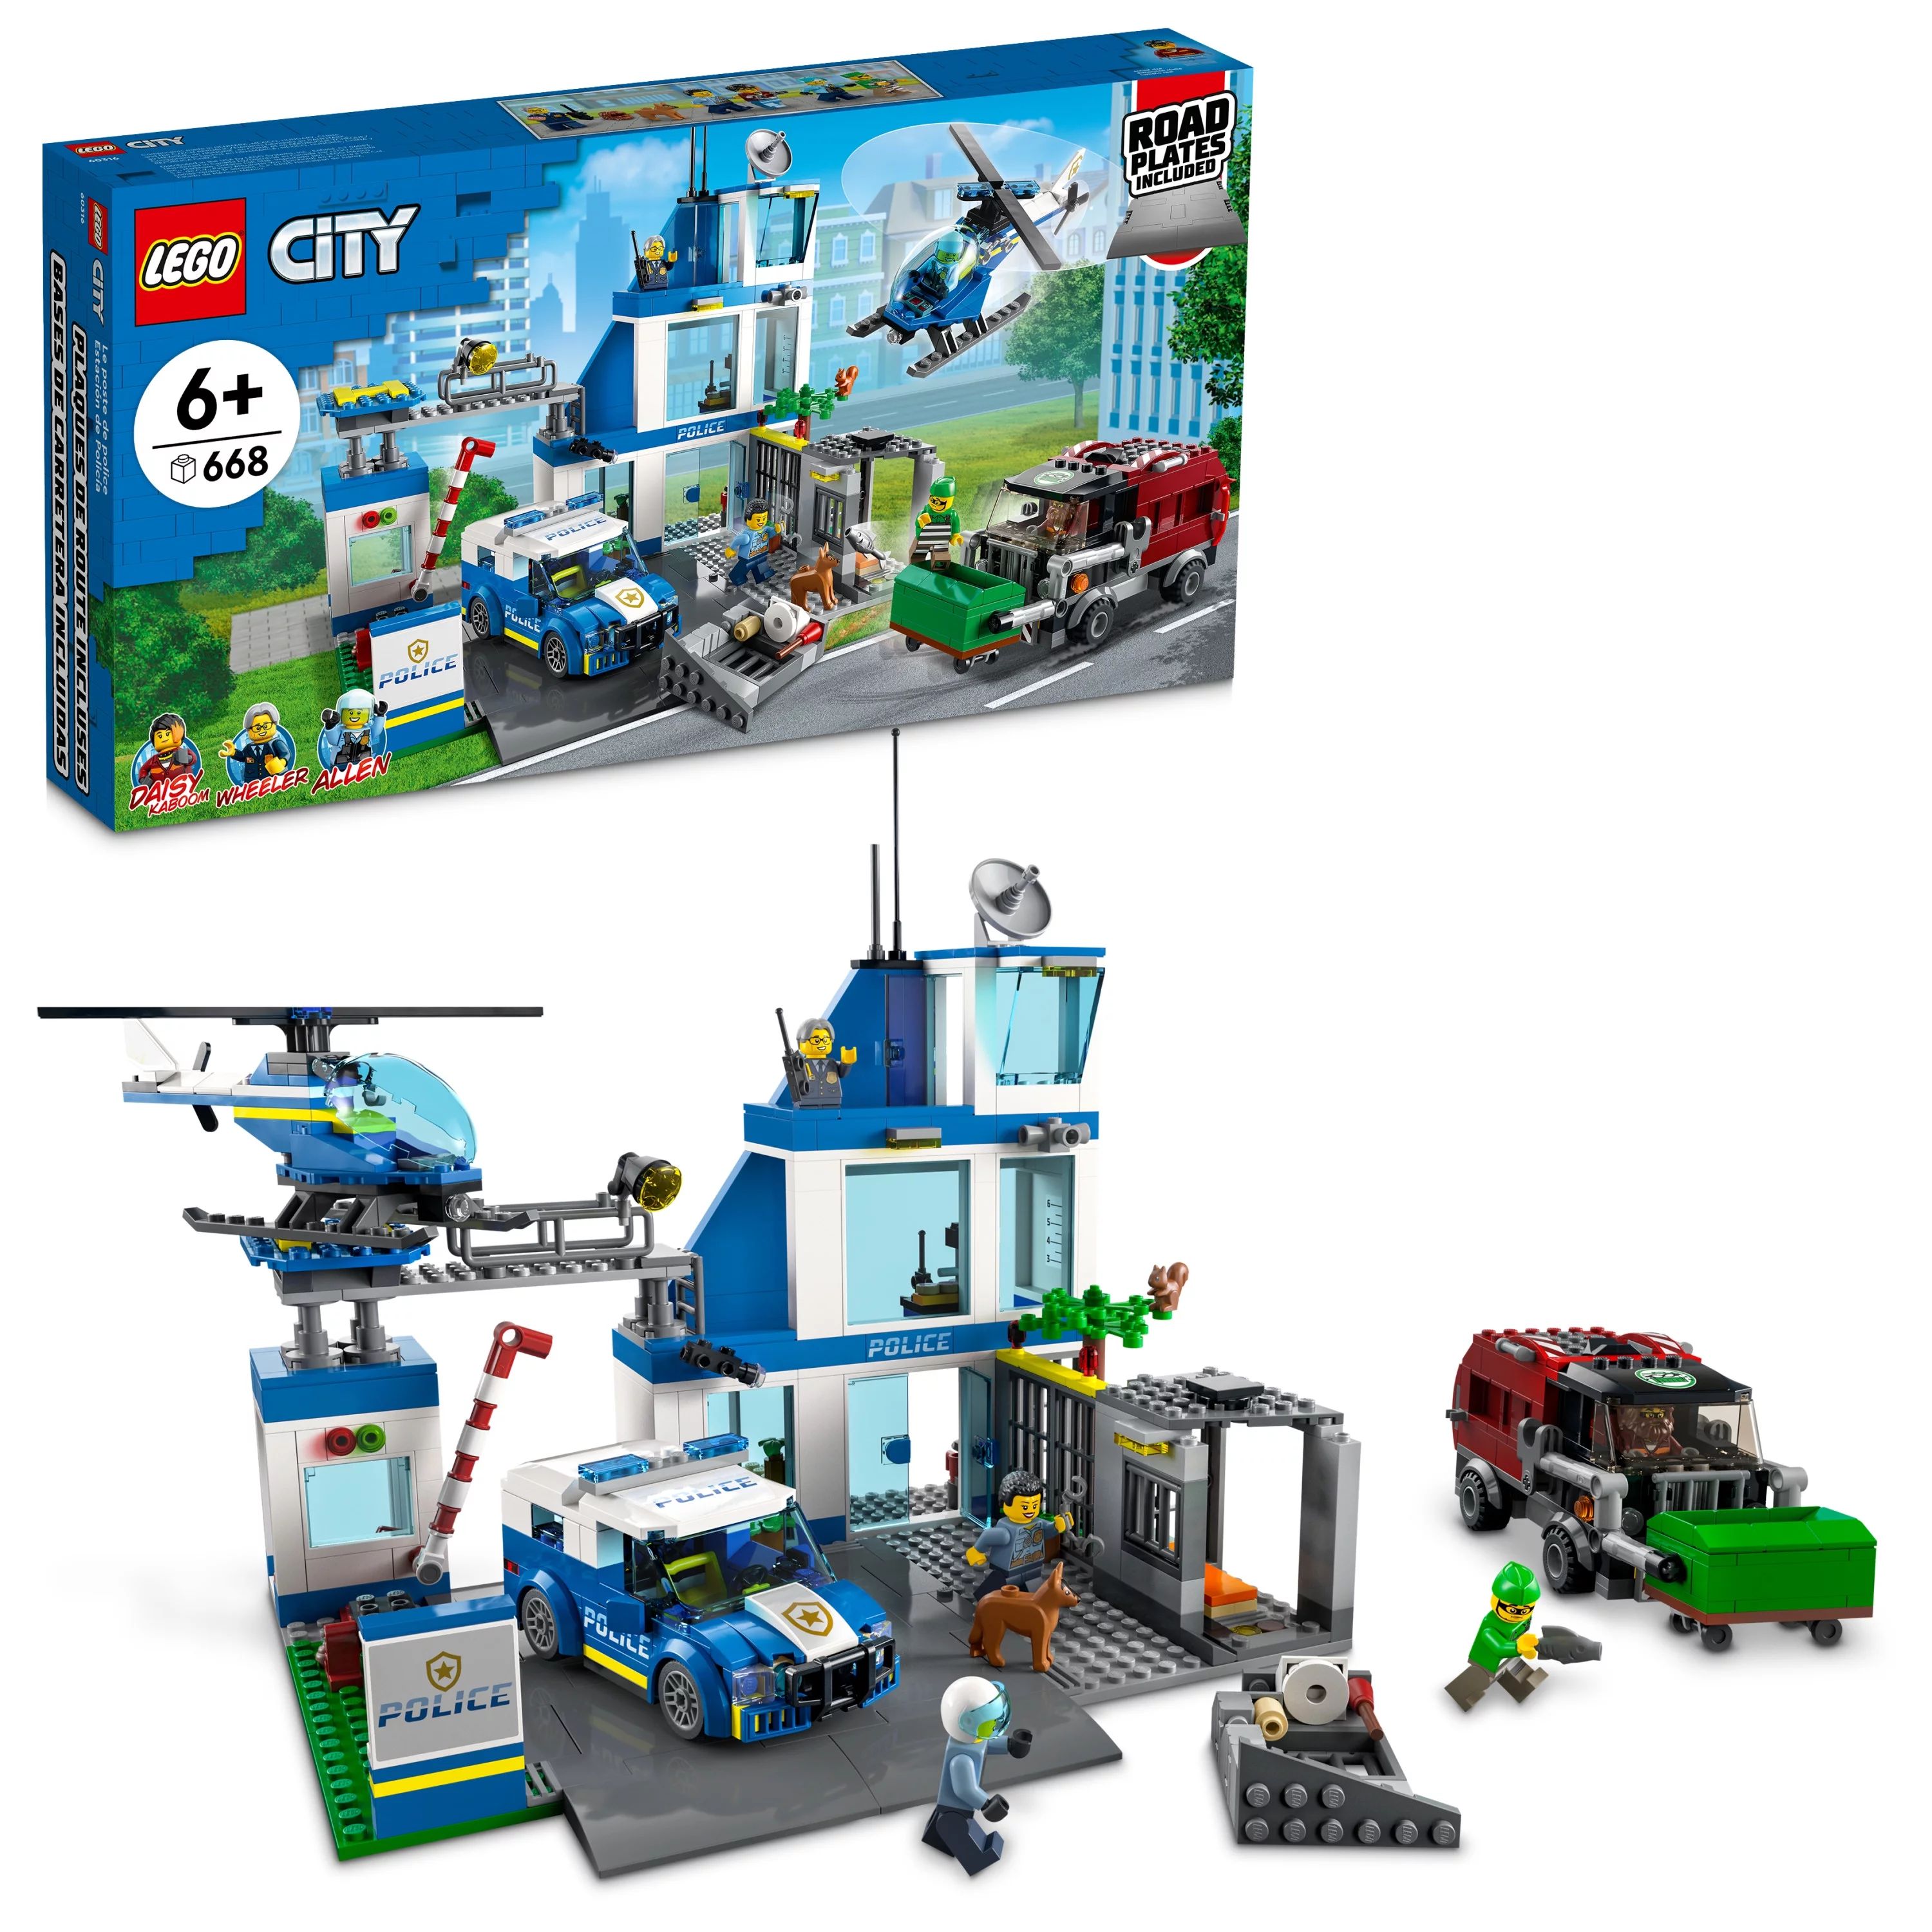 LEGO City Police Station Building Set for Kids Ages 6 & Up (60316) | Walmart (US)